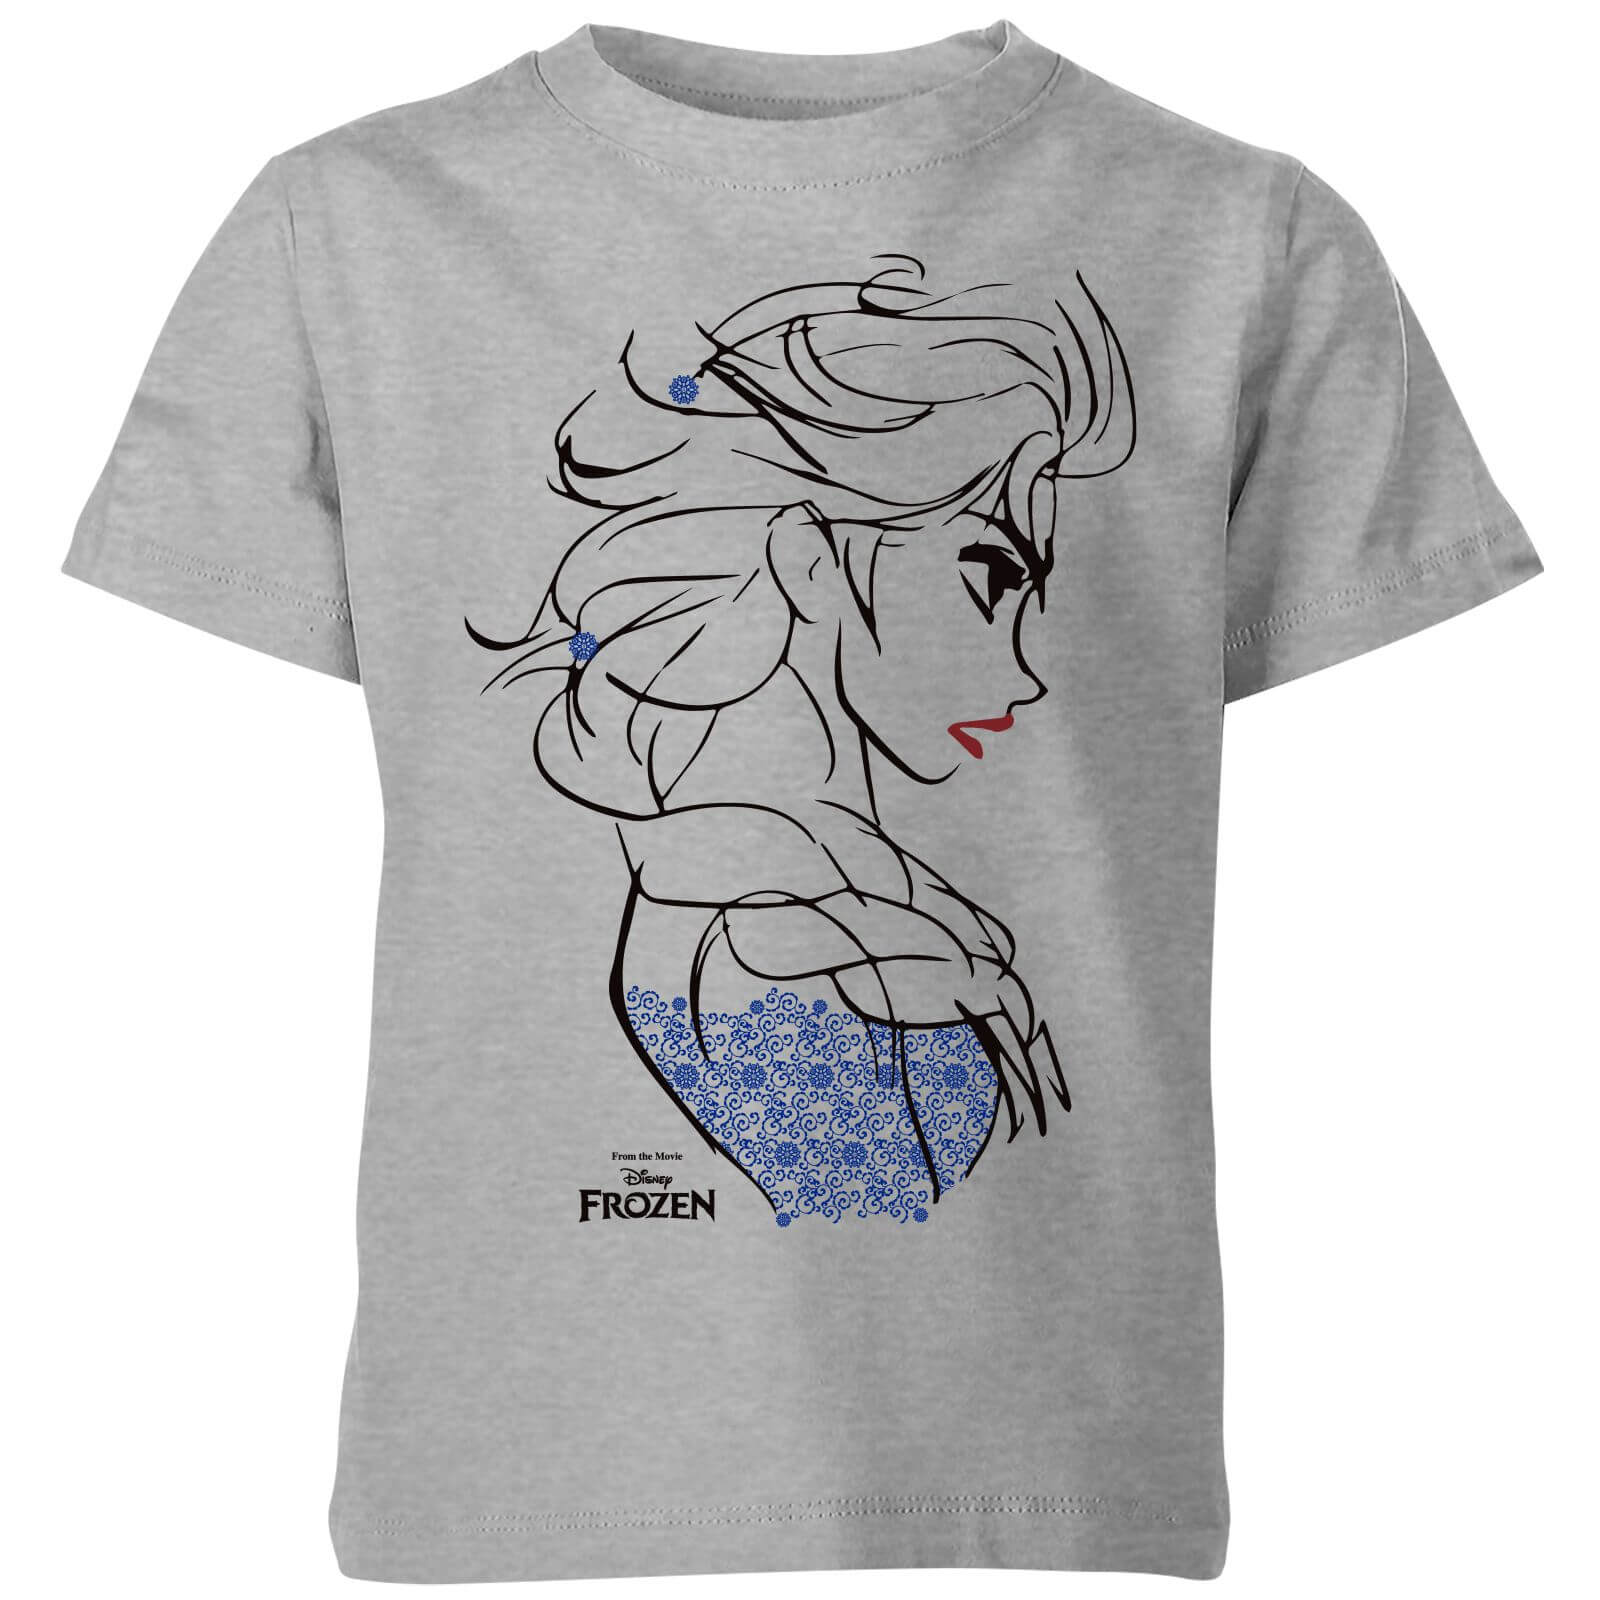 Camiseta Disney Frozen Elsa Sketch - Niño - Gris - 3-4 años - Gris